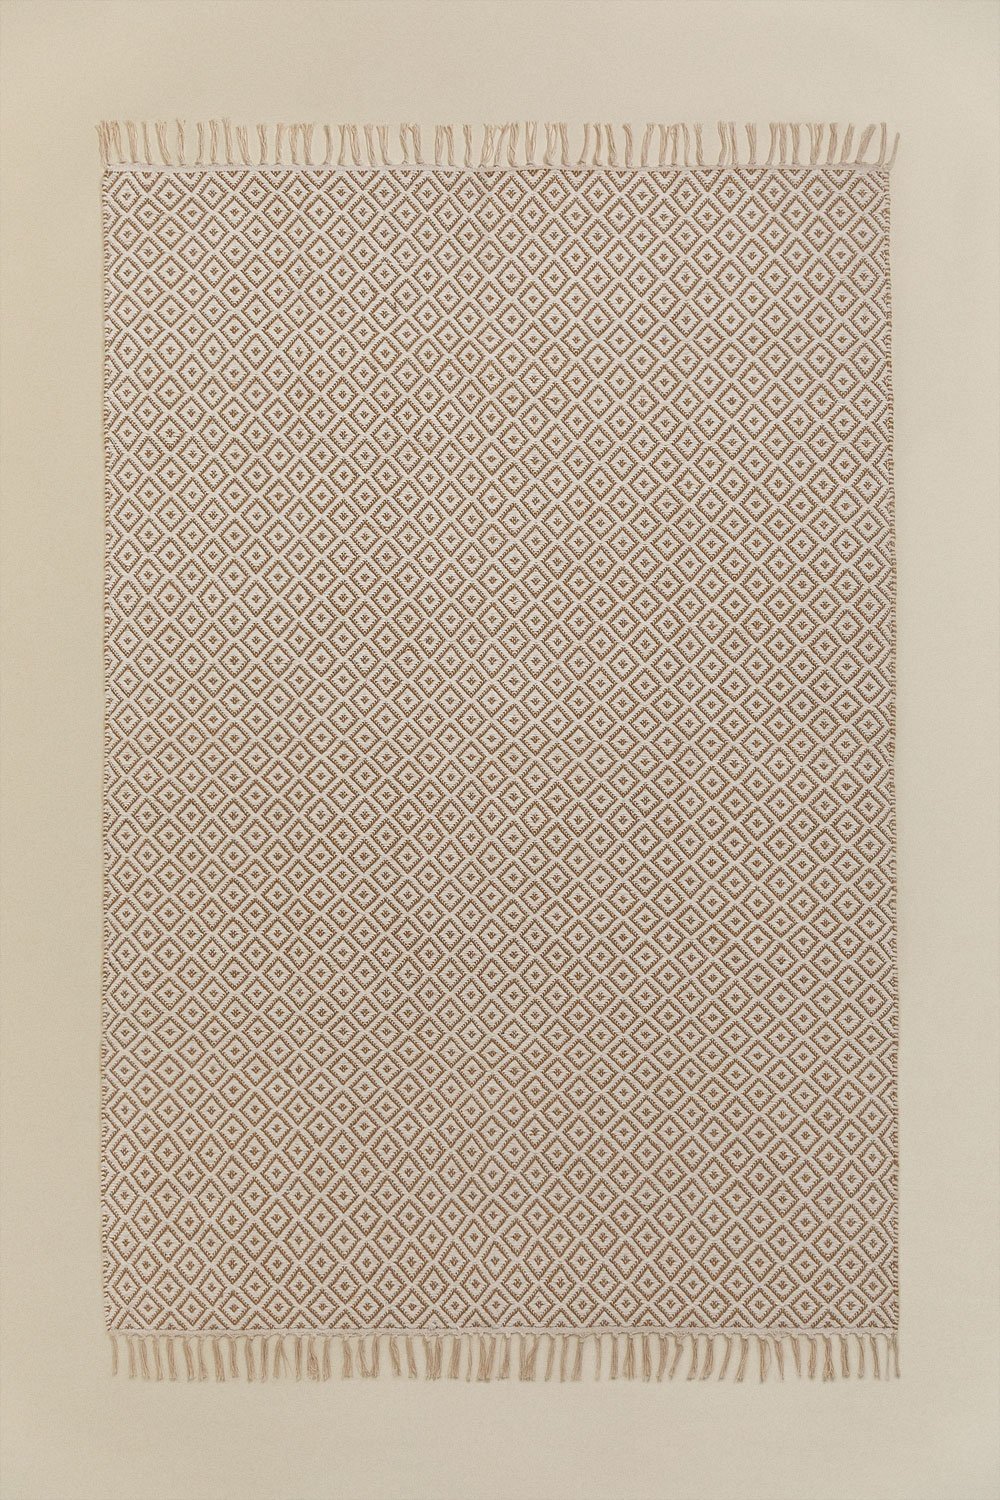 Vloerkleed van katoen en jute (175x122 cm) Durat, galerij beeld 1